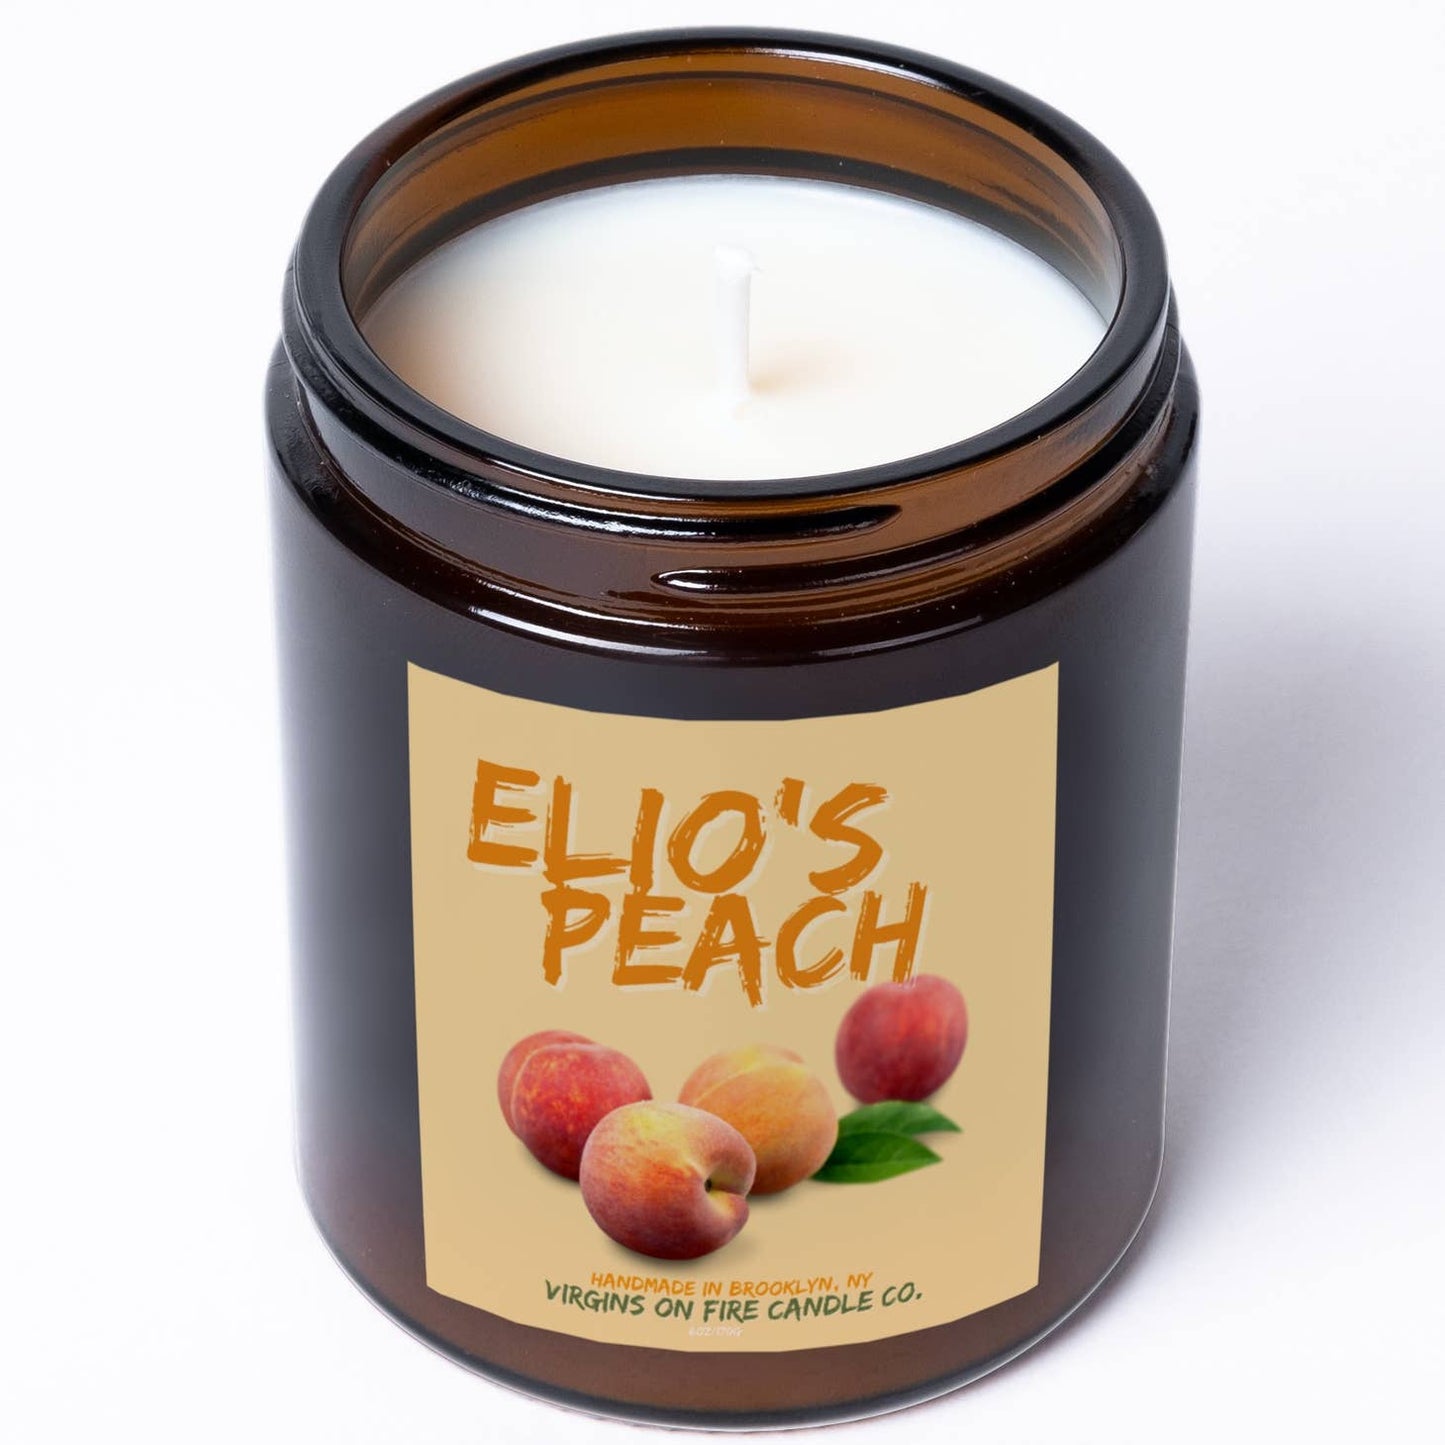 Elio's Peach Candle